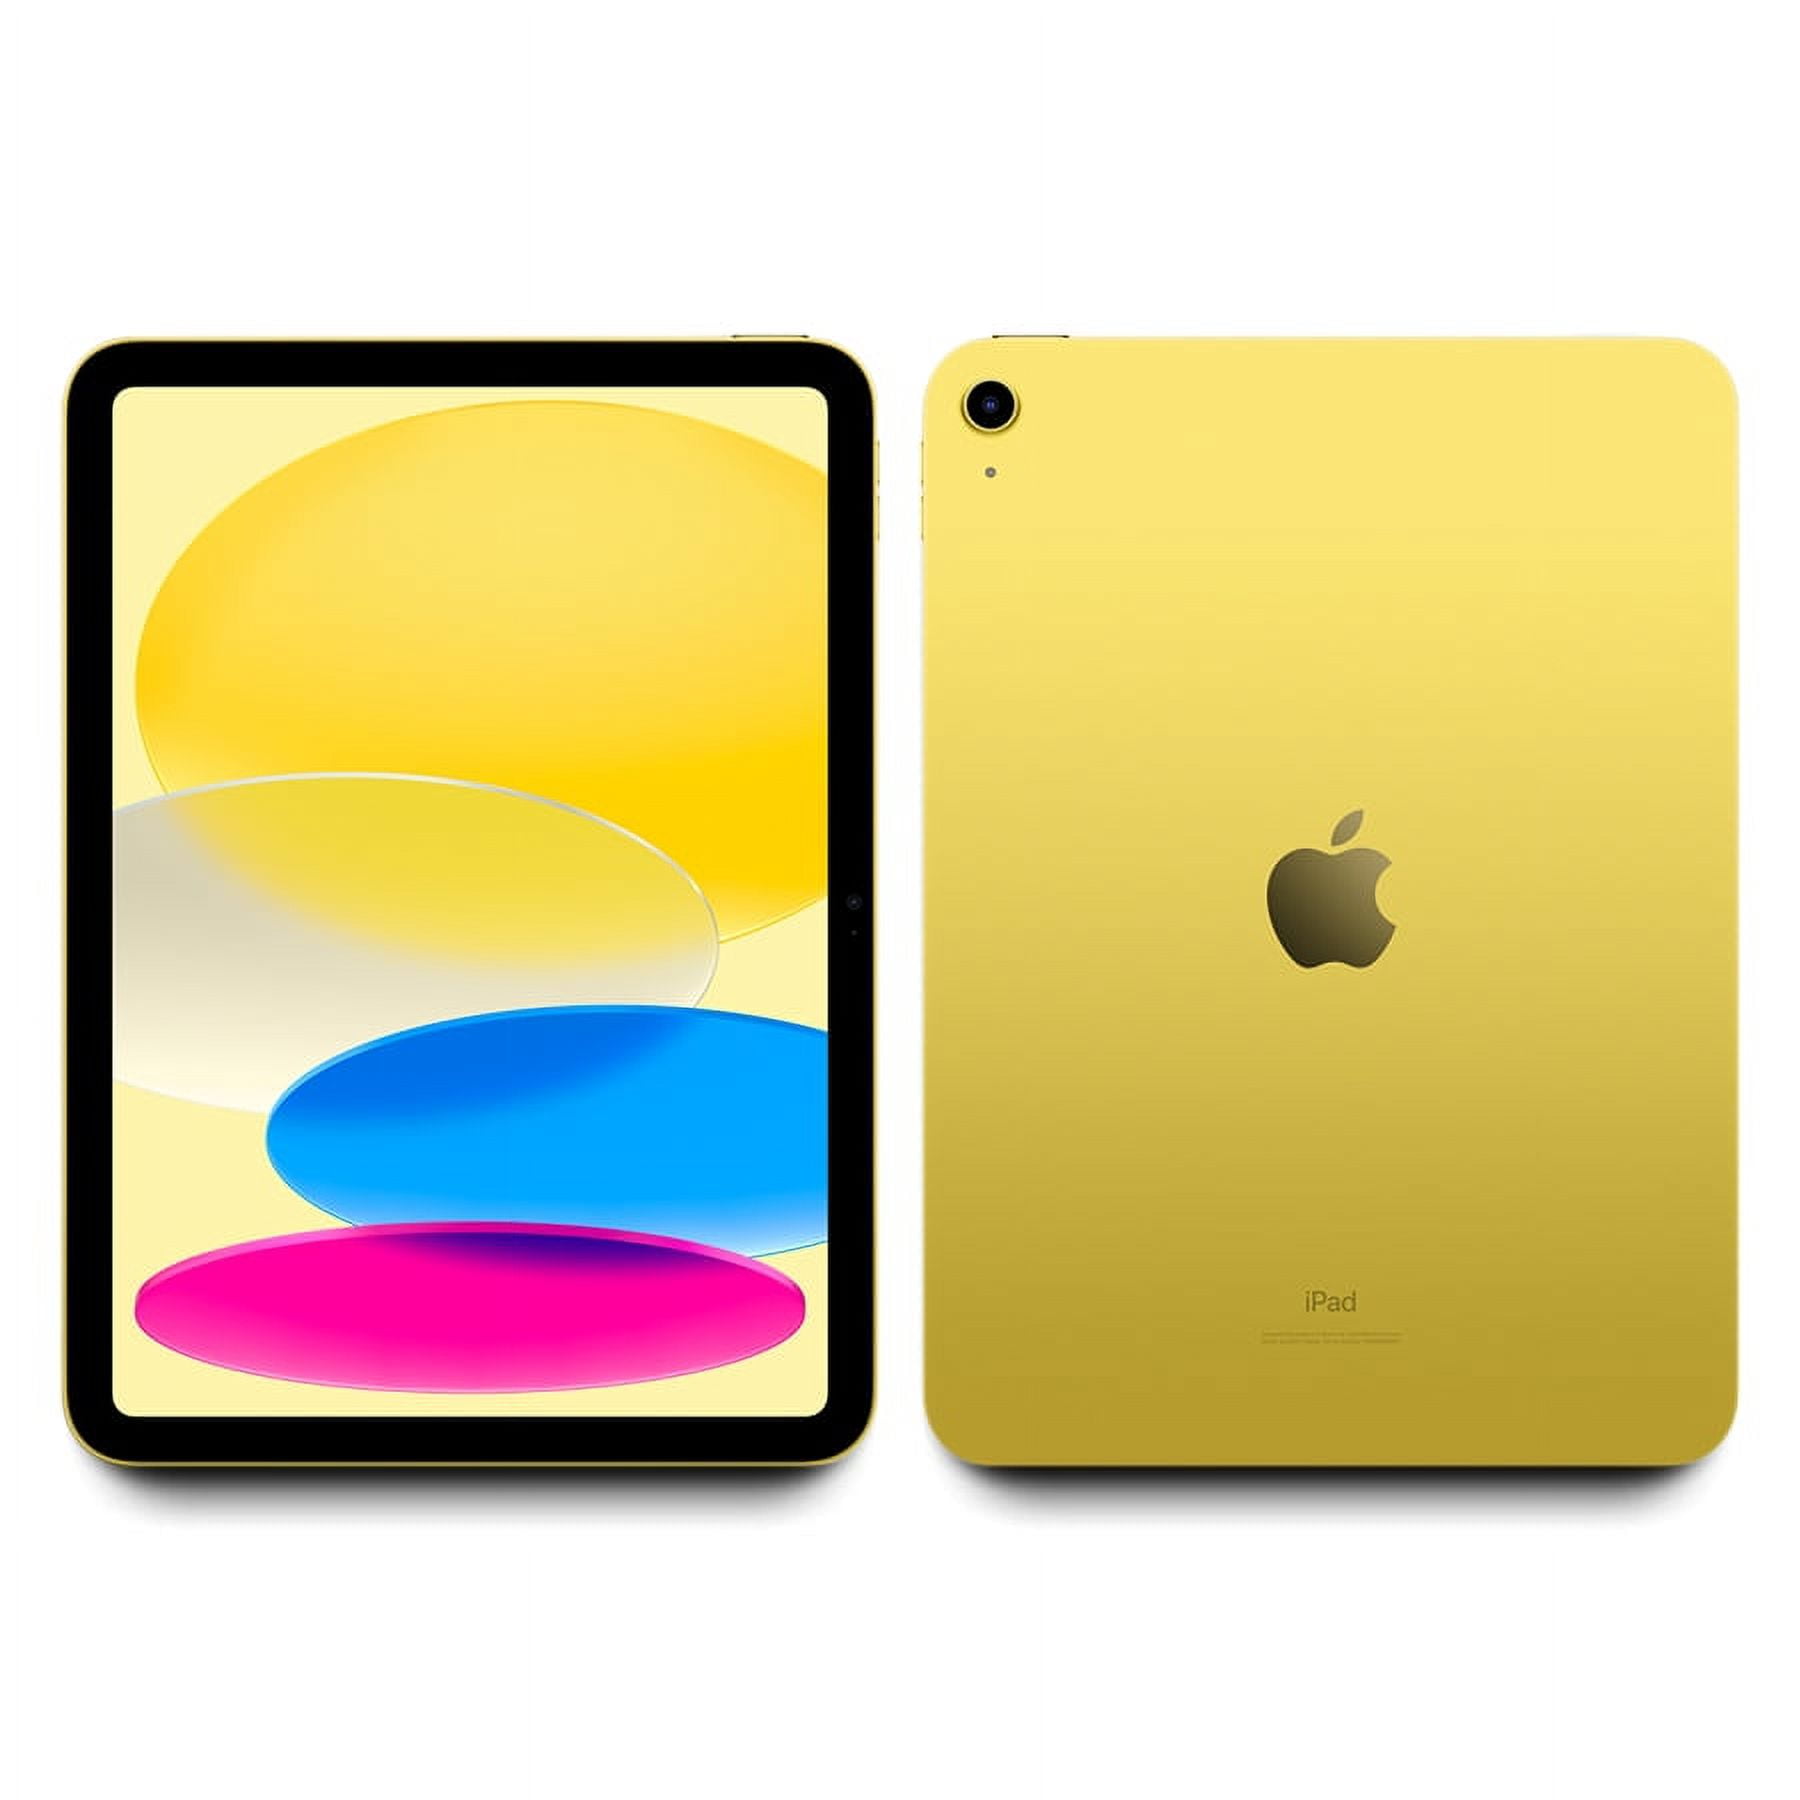  2020 Apple iPad Air (10.9-inch, Wi-Fi, 64GB) - Silver (Renewed)  : Electronics